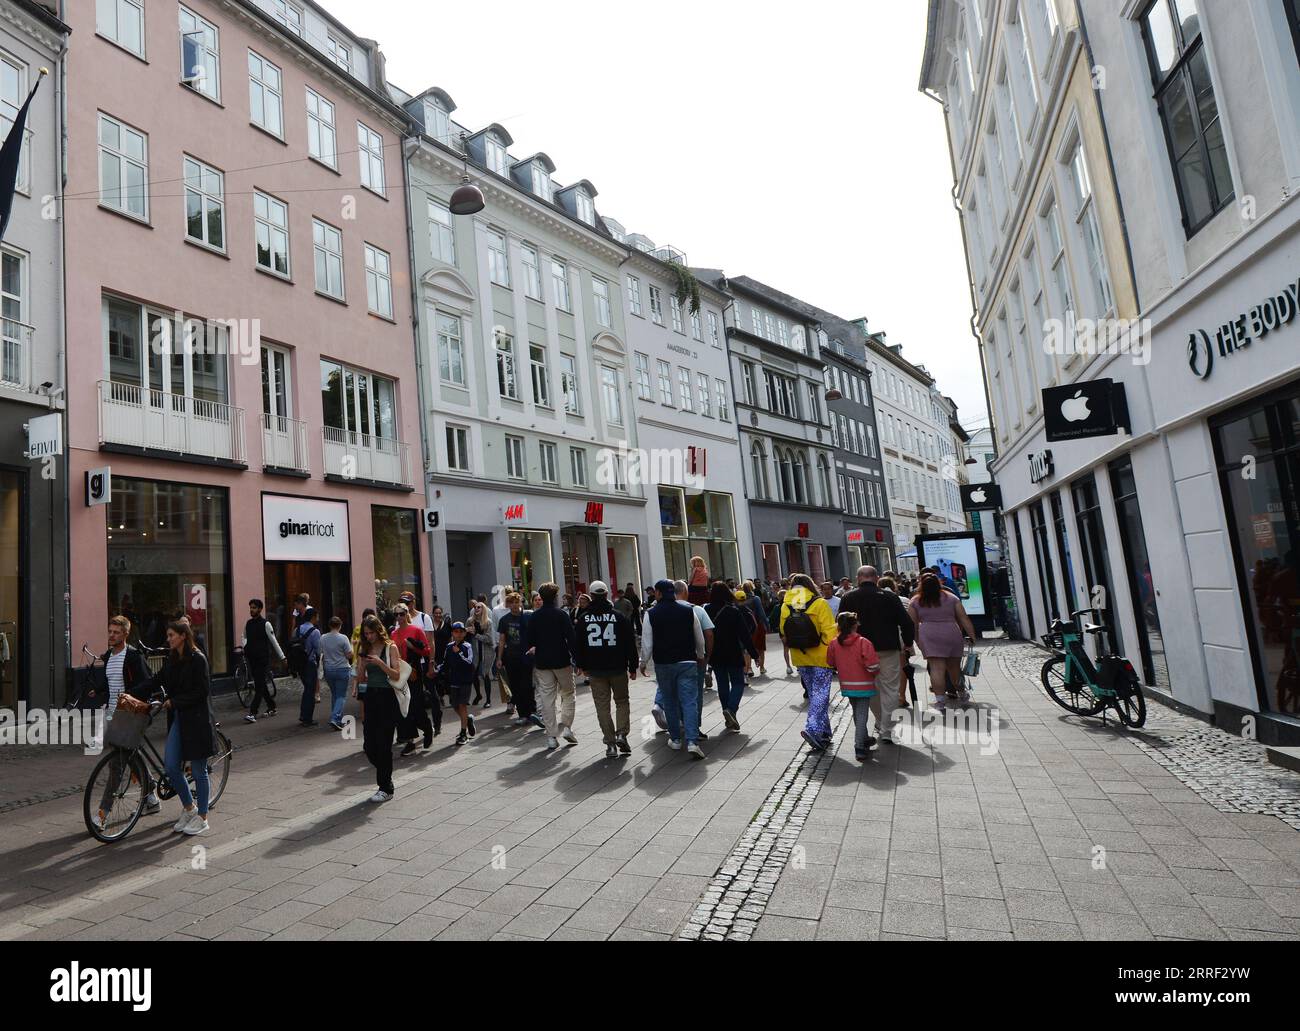 Strøget pedestrian street in Copenhagen, Denmark. Stock Photo